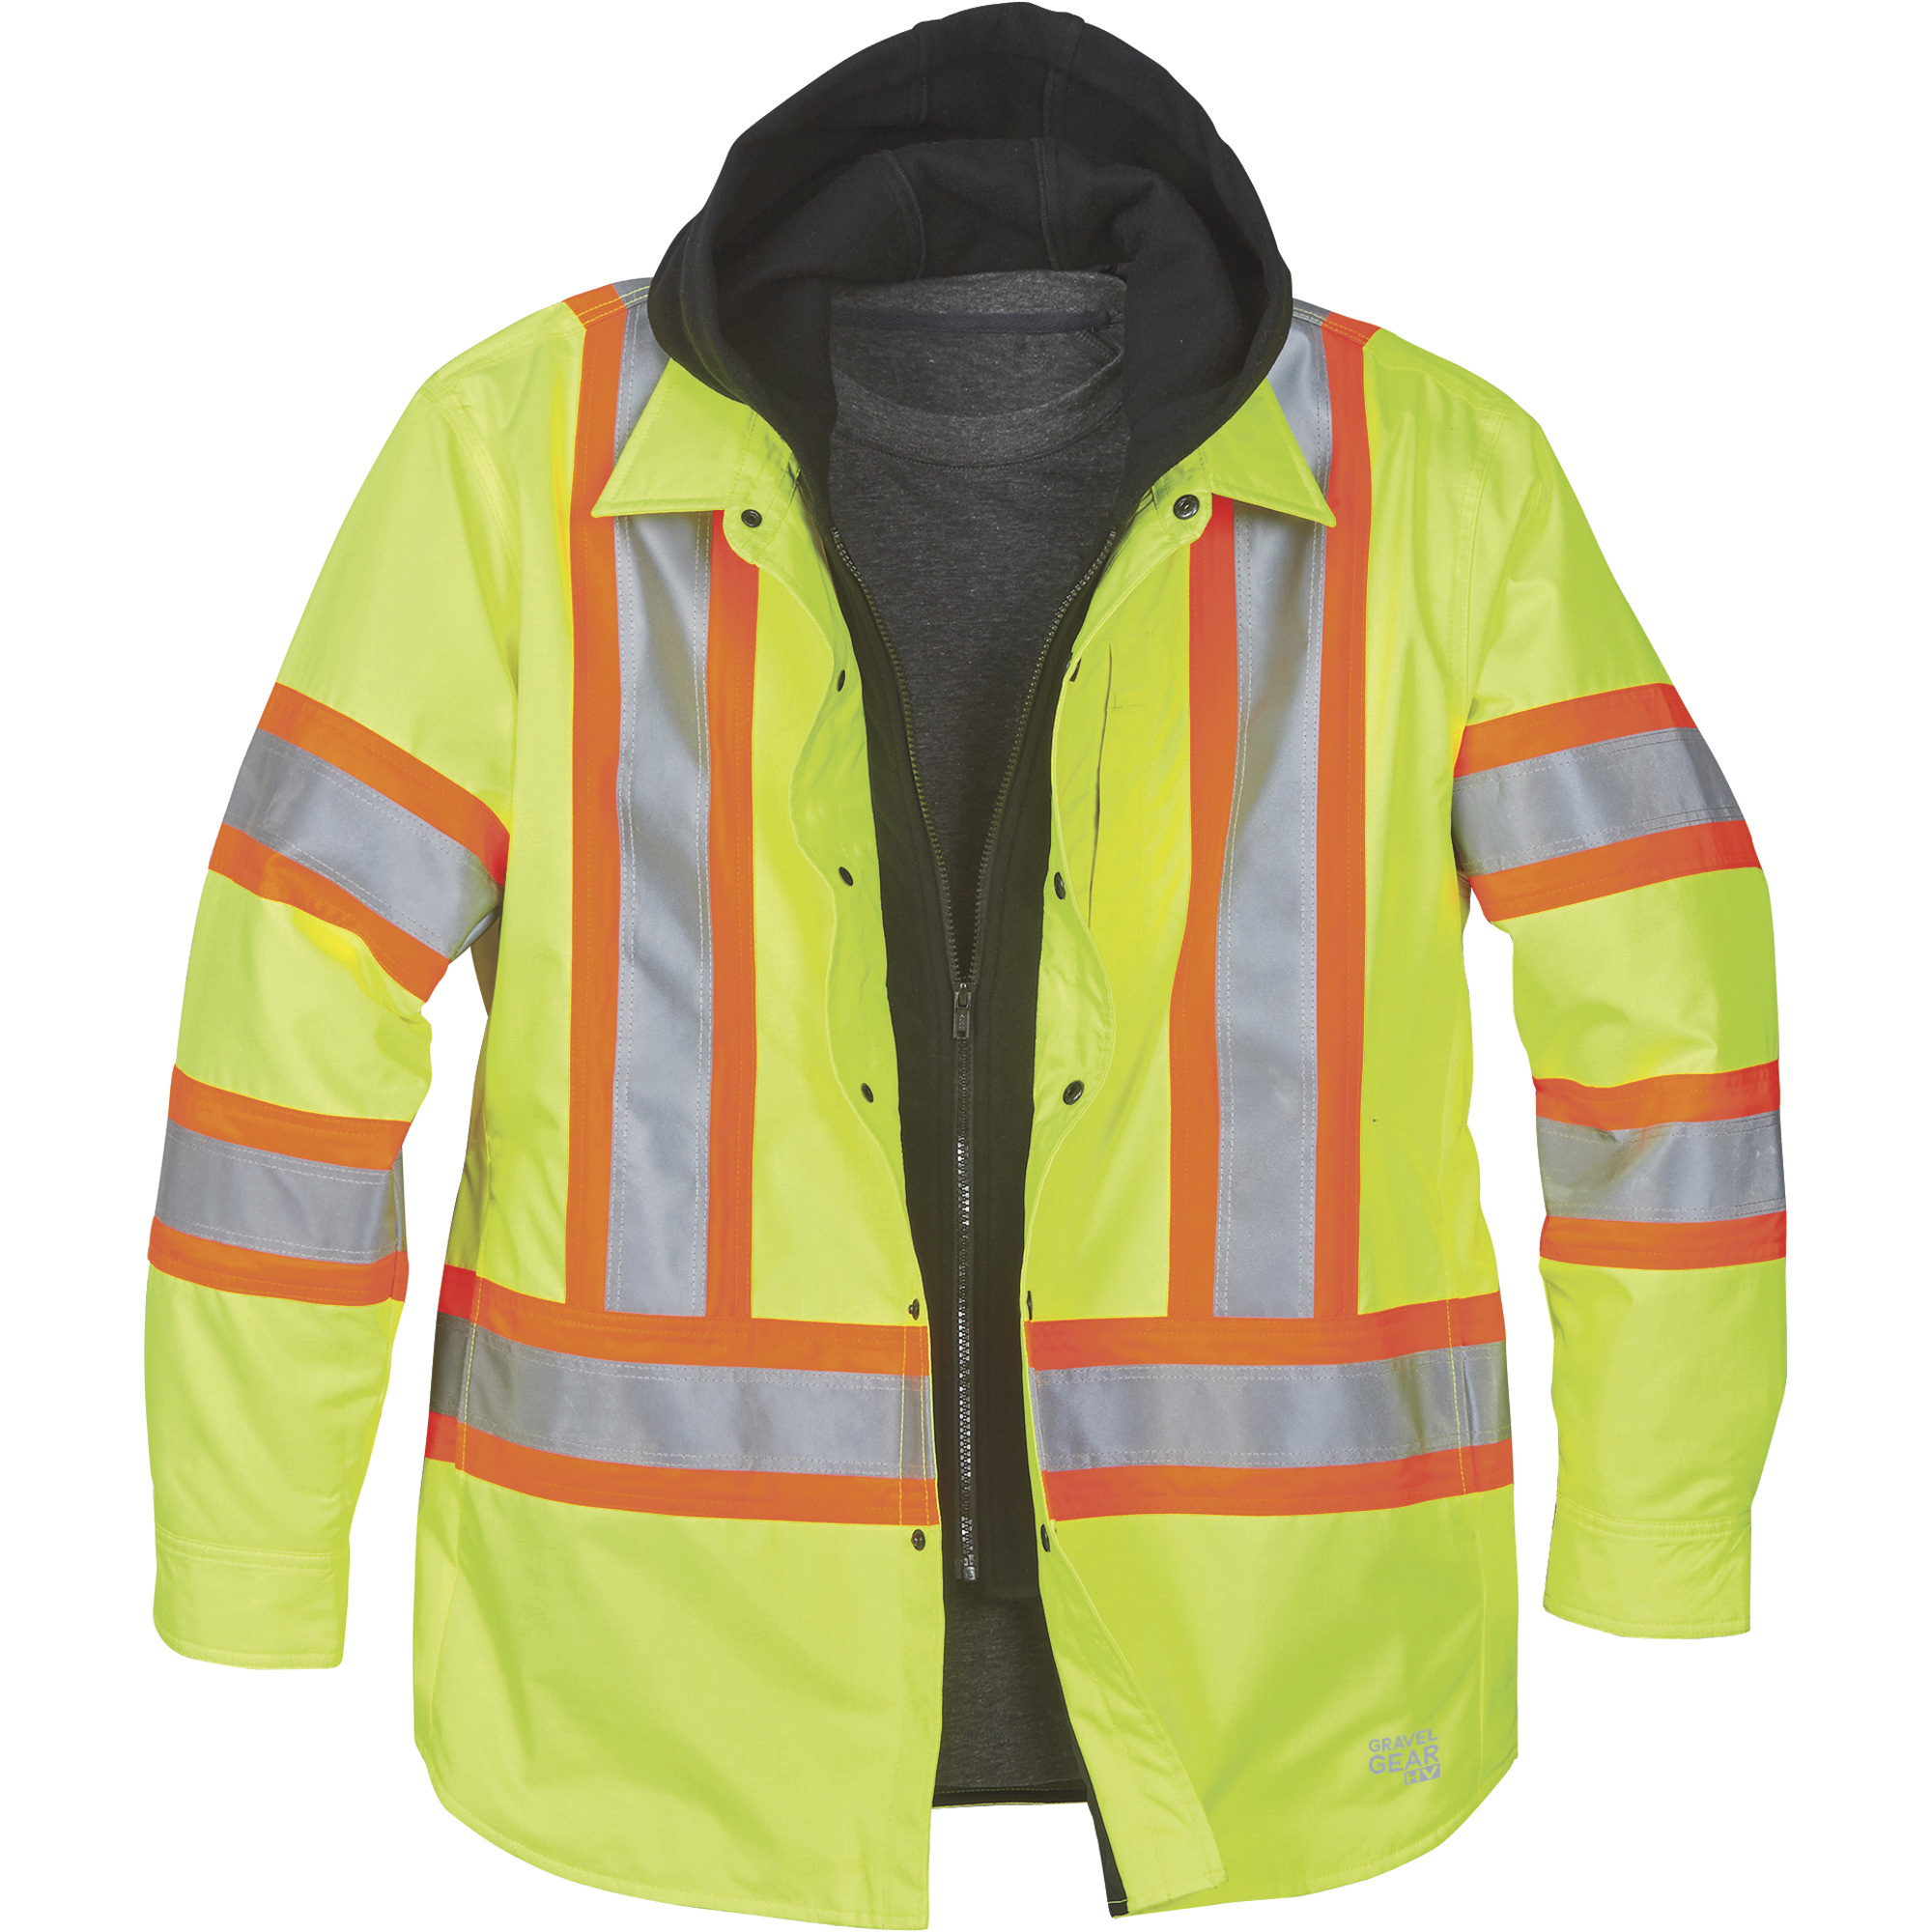 Gravel Gear Men's Class 3 High Visibility Lined Shirt Jacket â Lime, Large